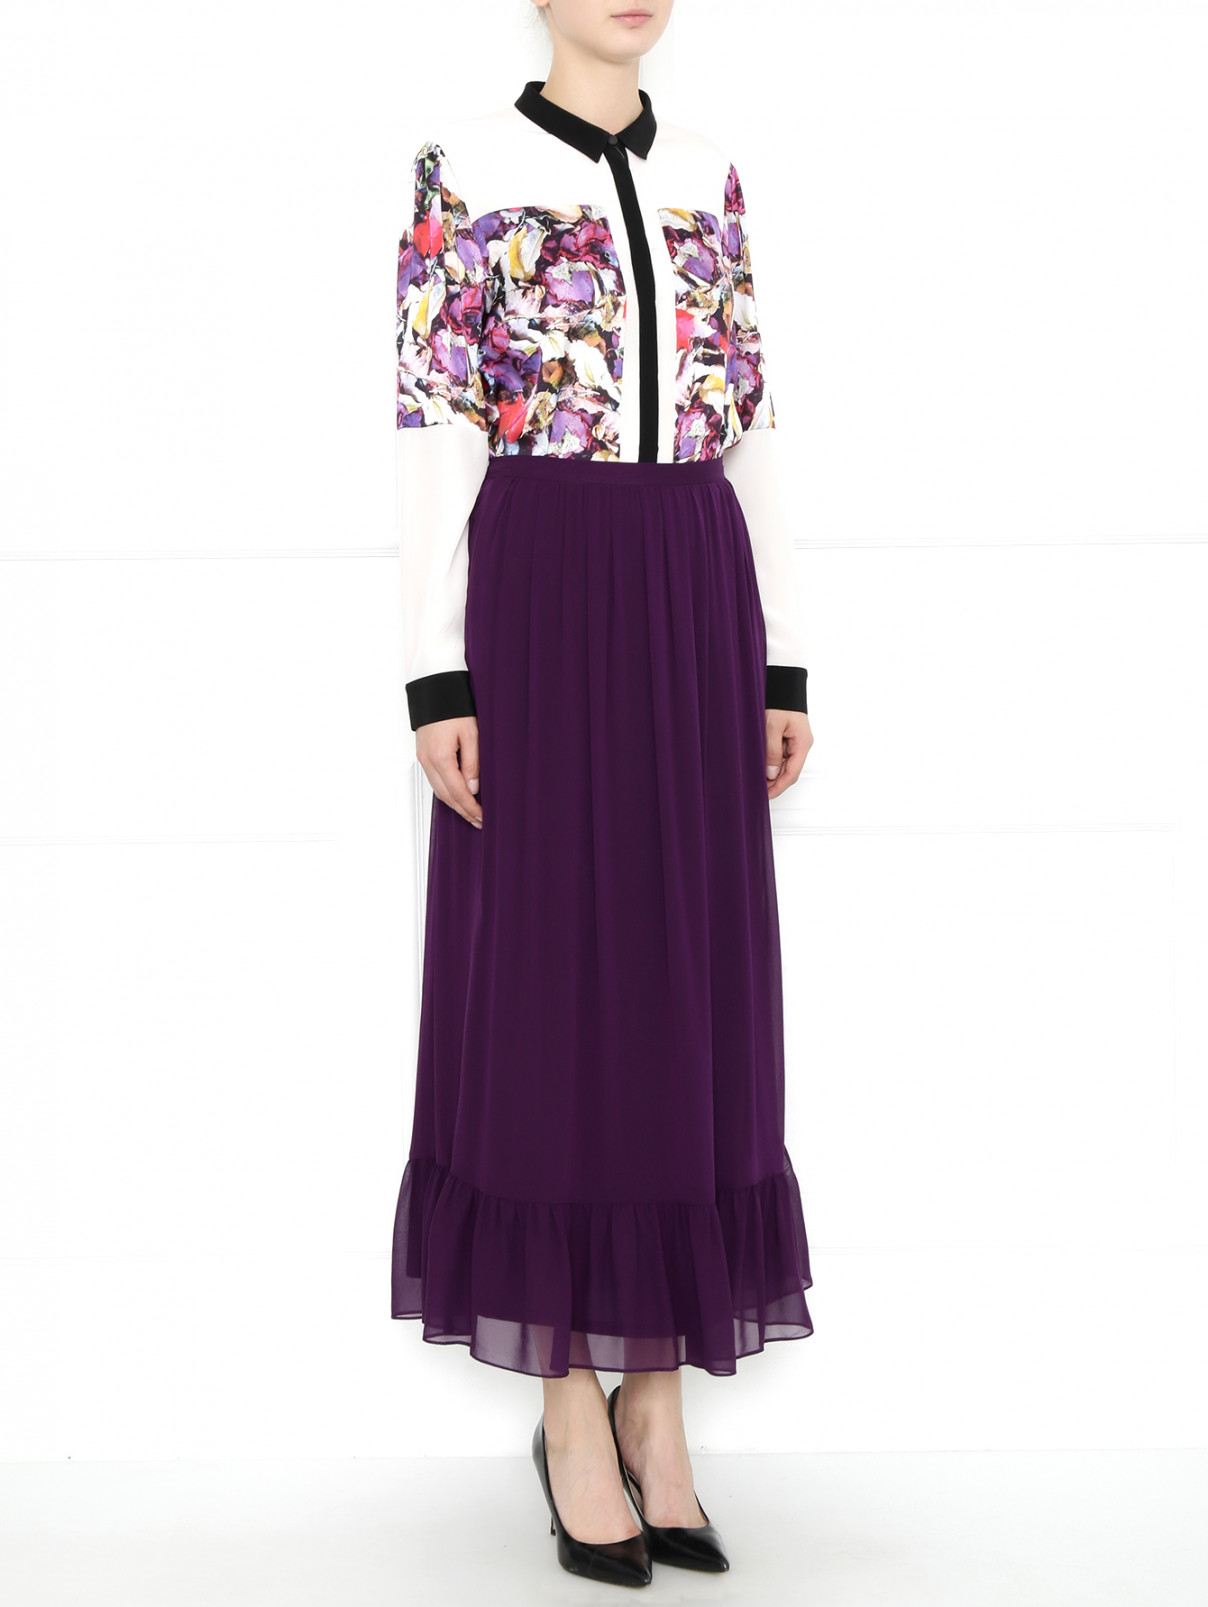 Юбка-макси из шелка DKNY  –  Модель Общий вид  – Цвет:  Фиолетовый